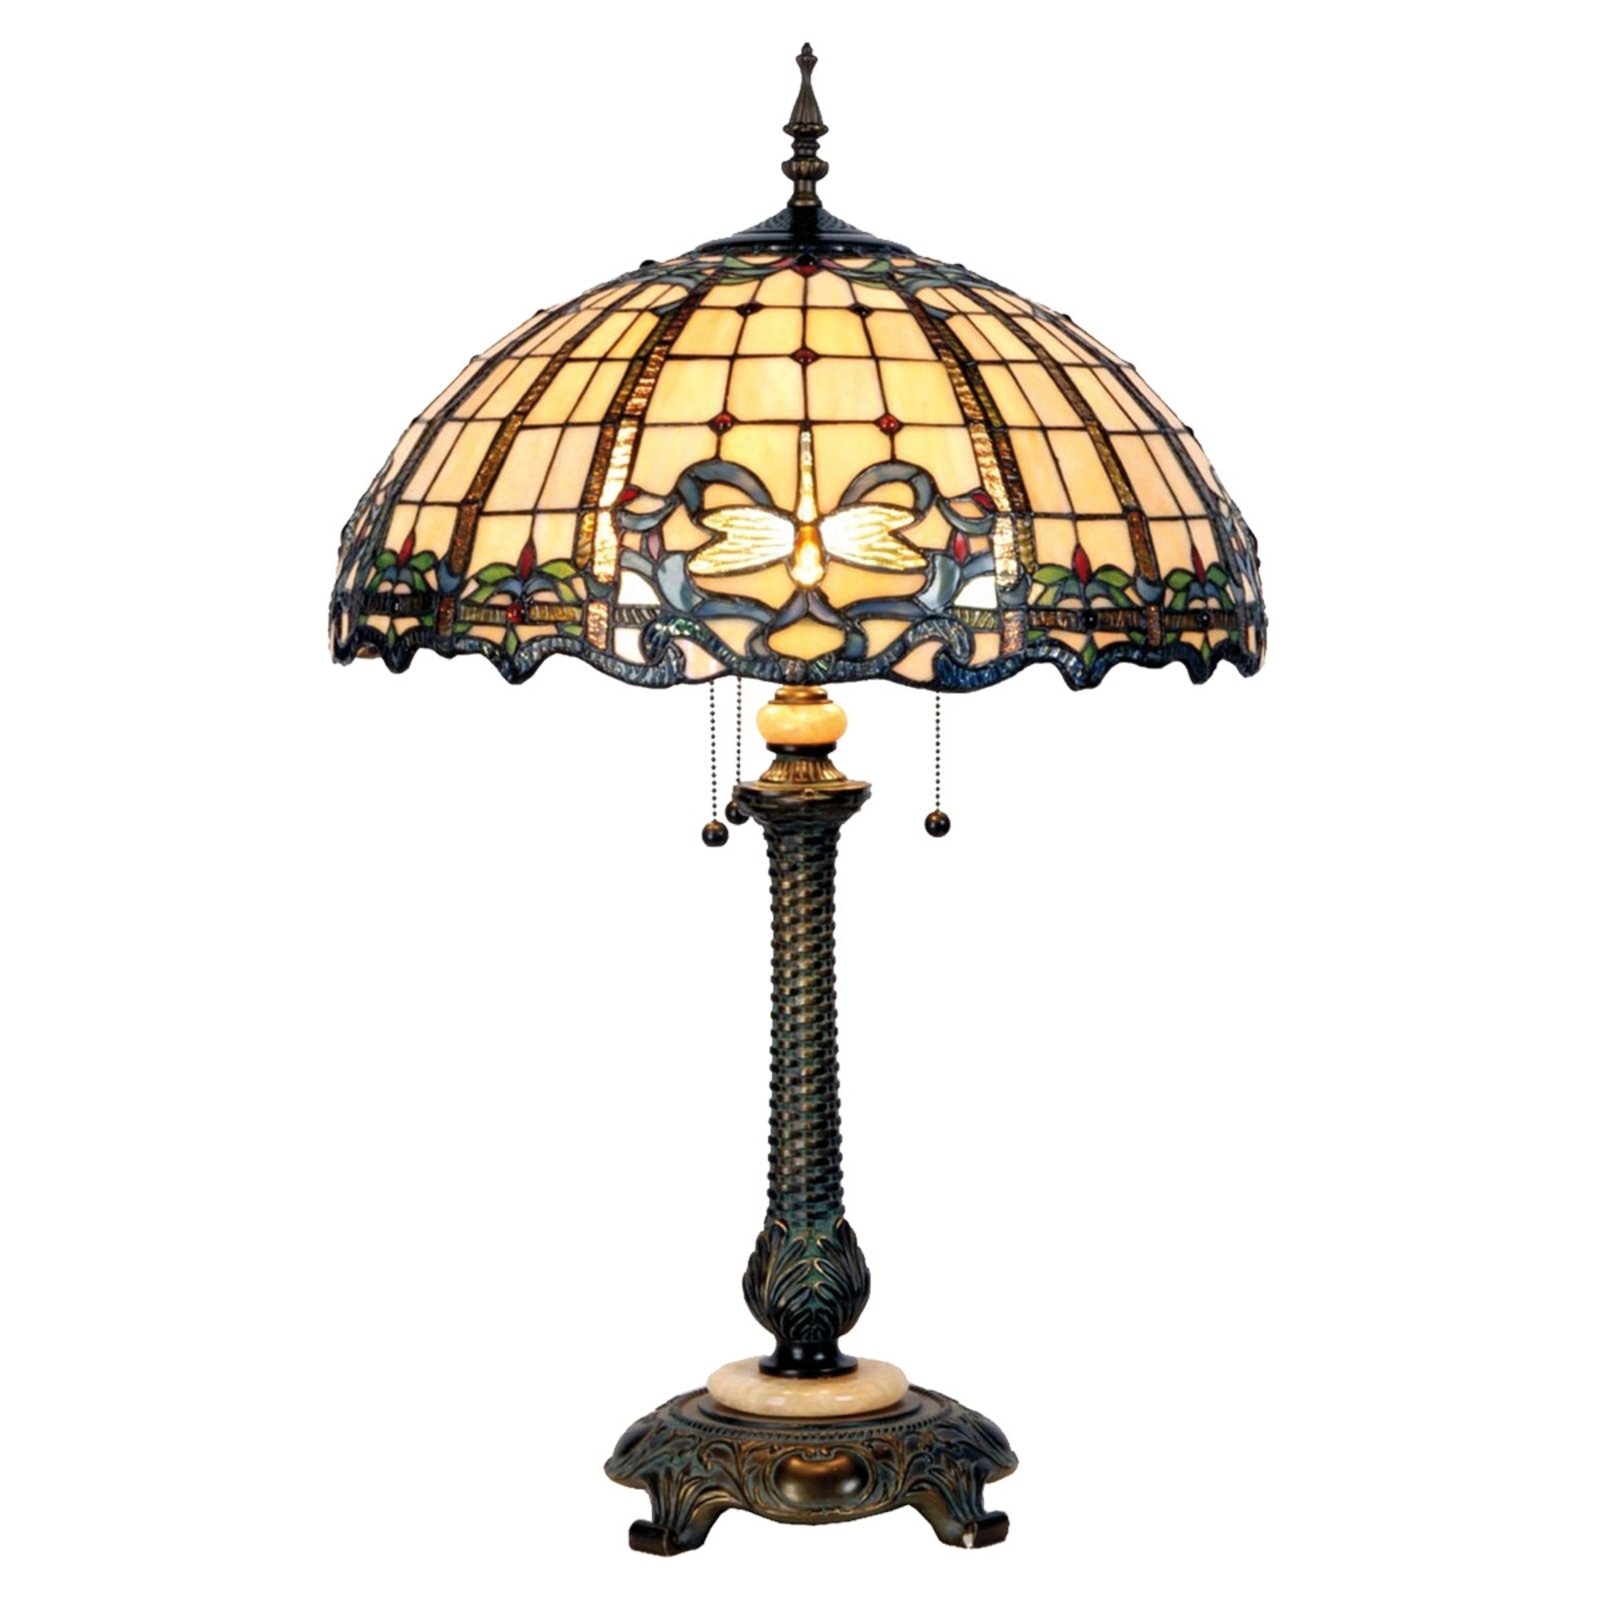 Vidunderlig bordlampe Atlantis, Tiffany-design